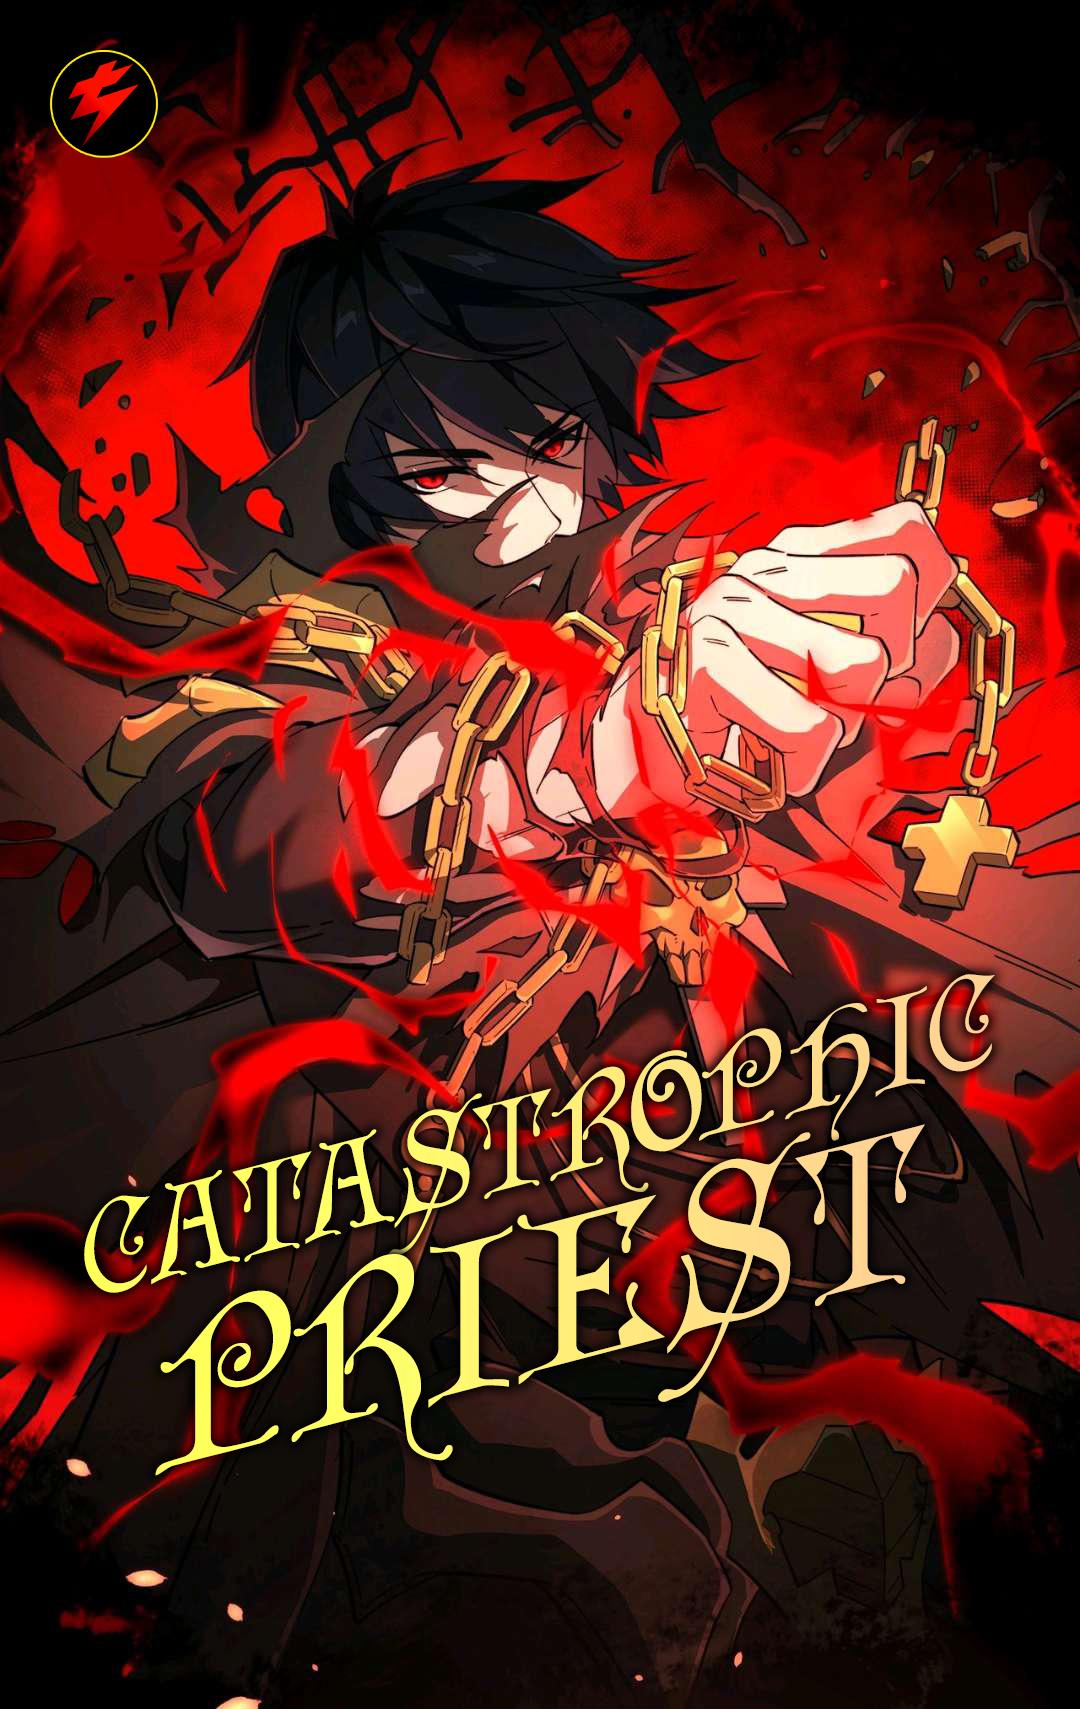 Catastrophic Priest cover image